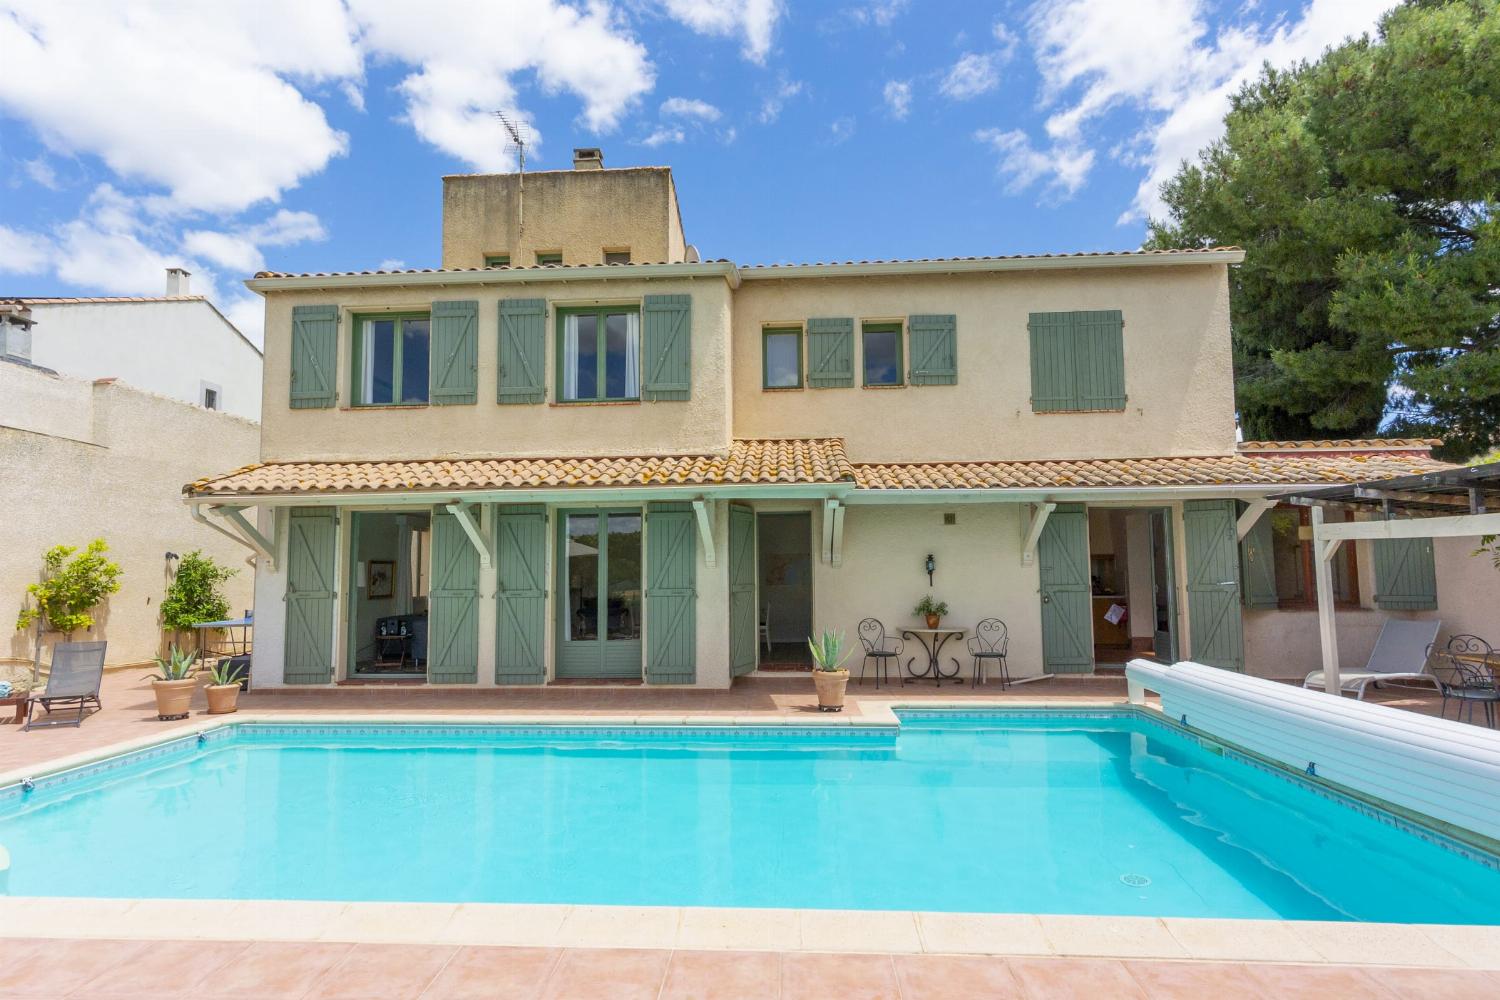 Location maison dans le sud de la France avec piscine privée chauffée